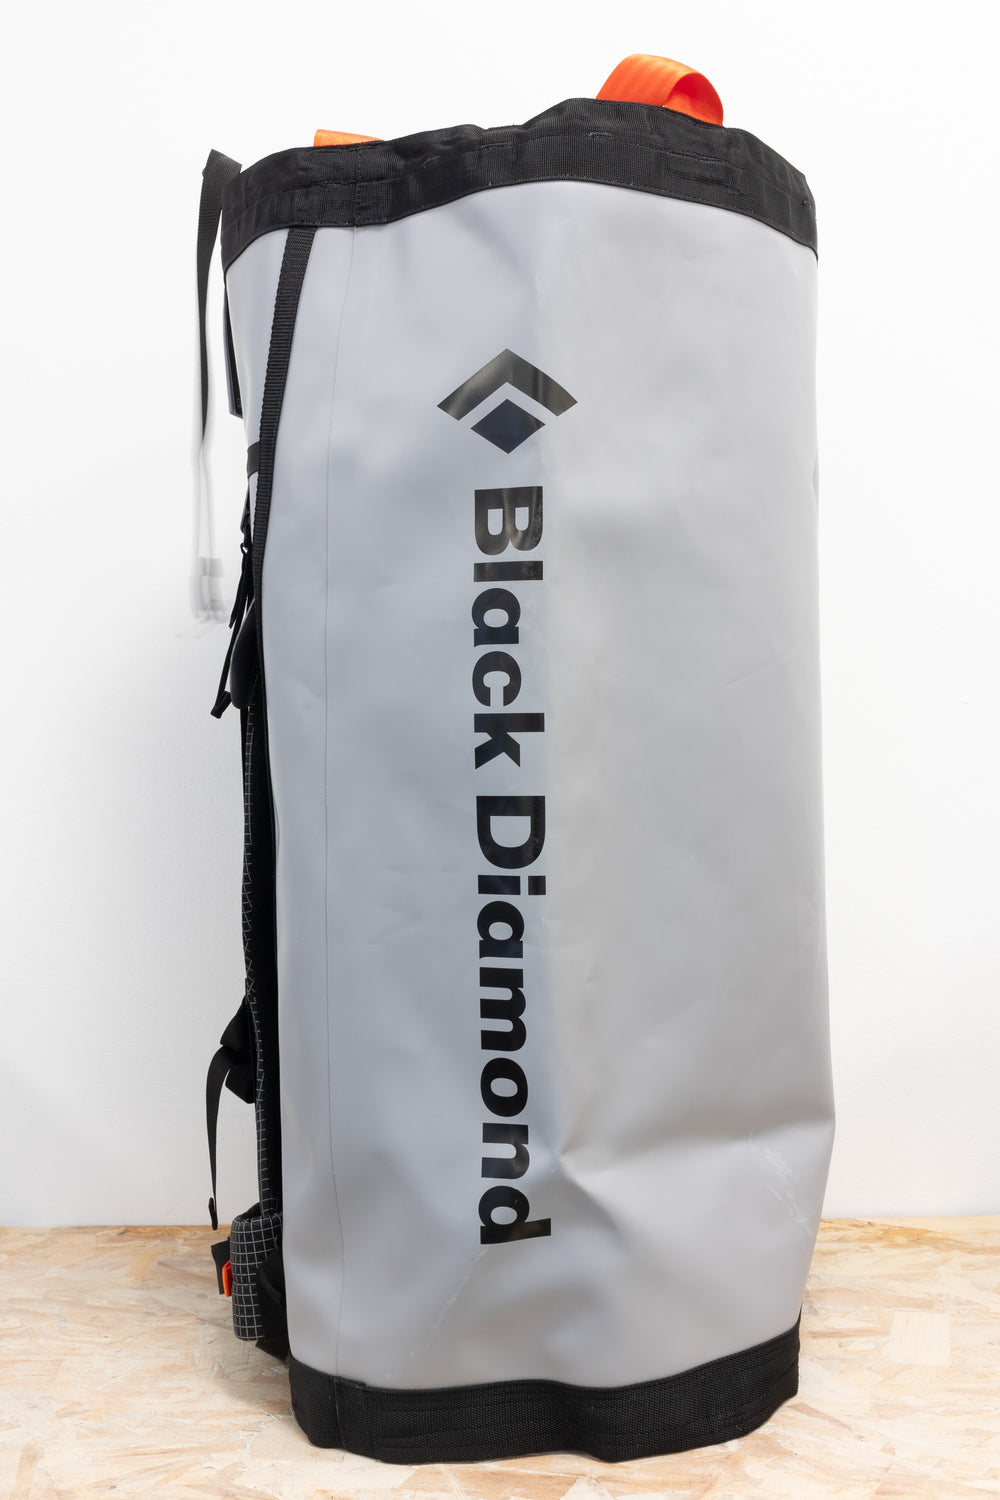 Black Diamond - Wall Hauler Haul Bag